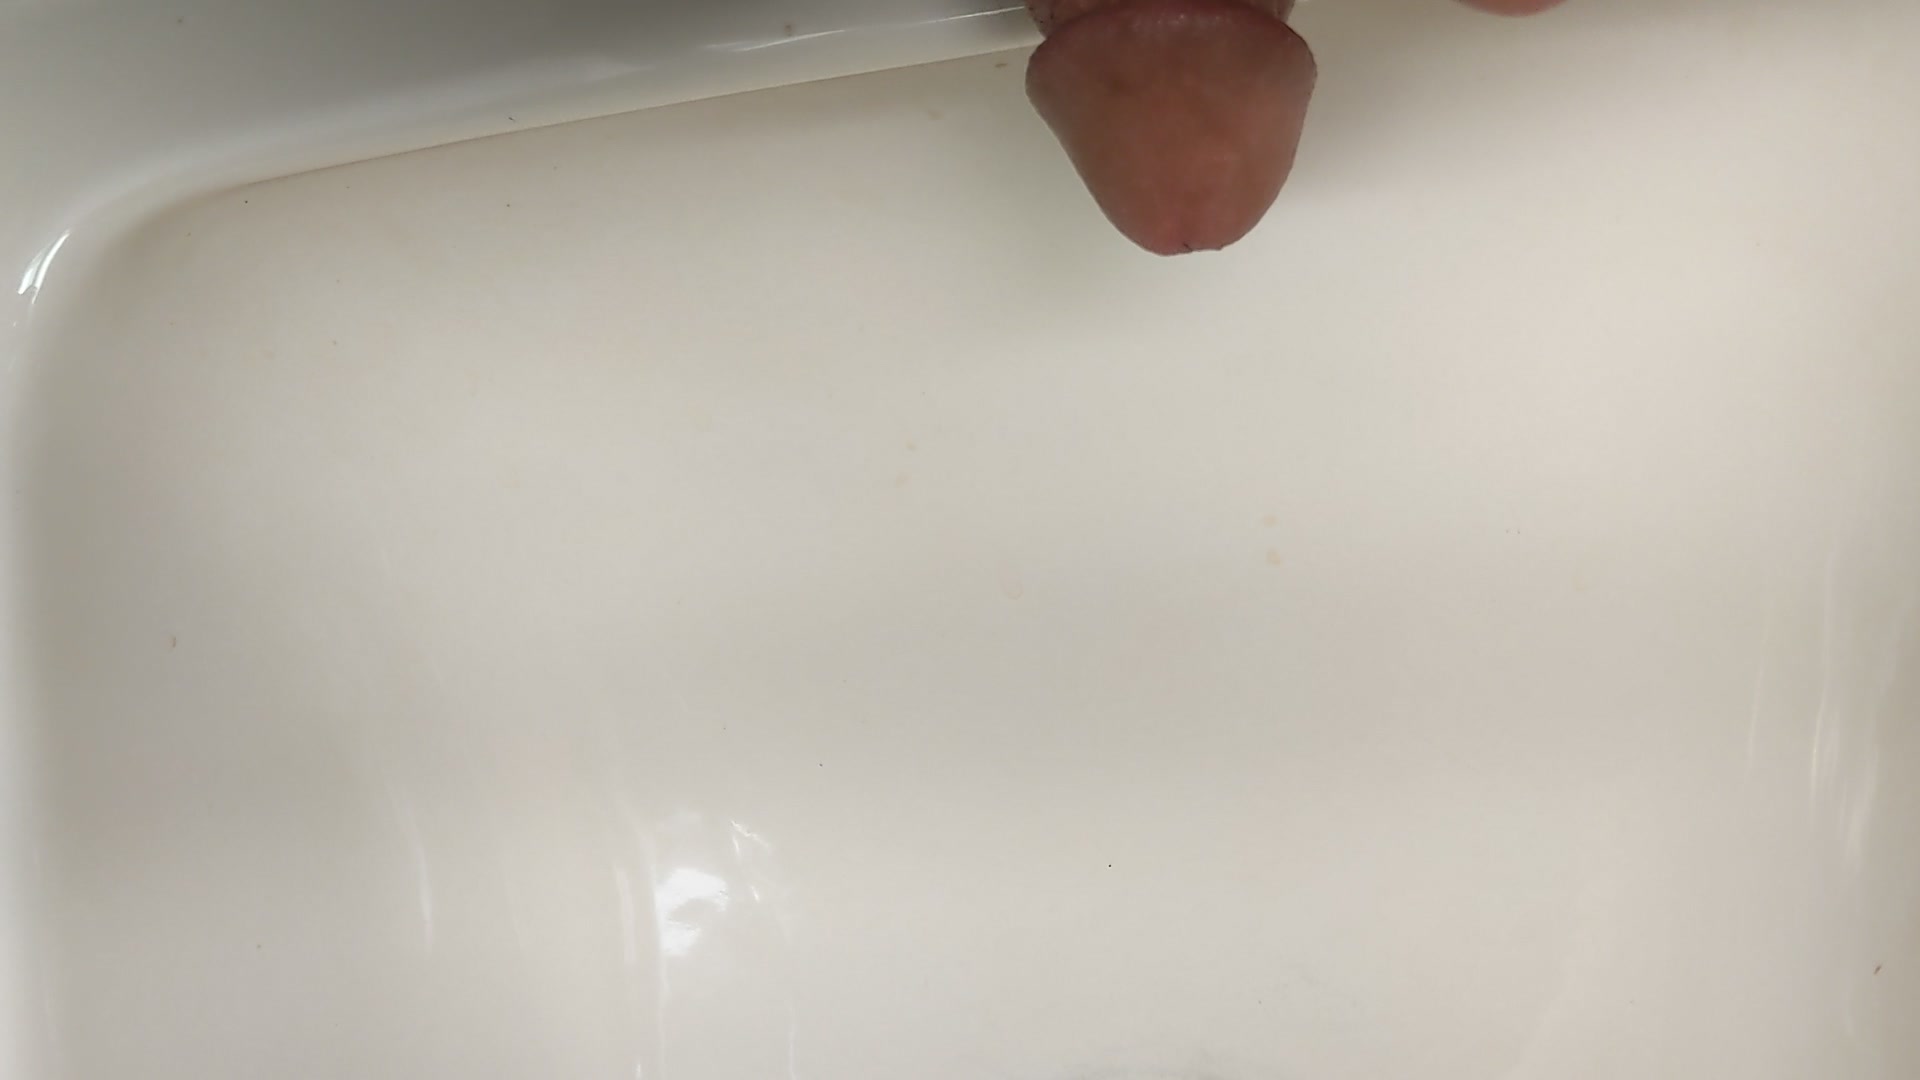 Peeing in sink